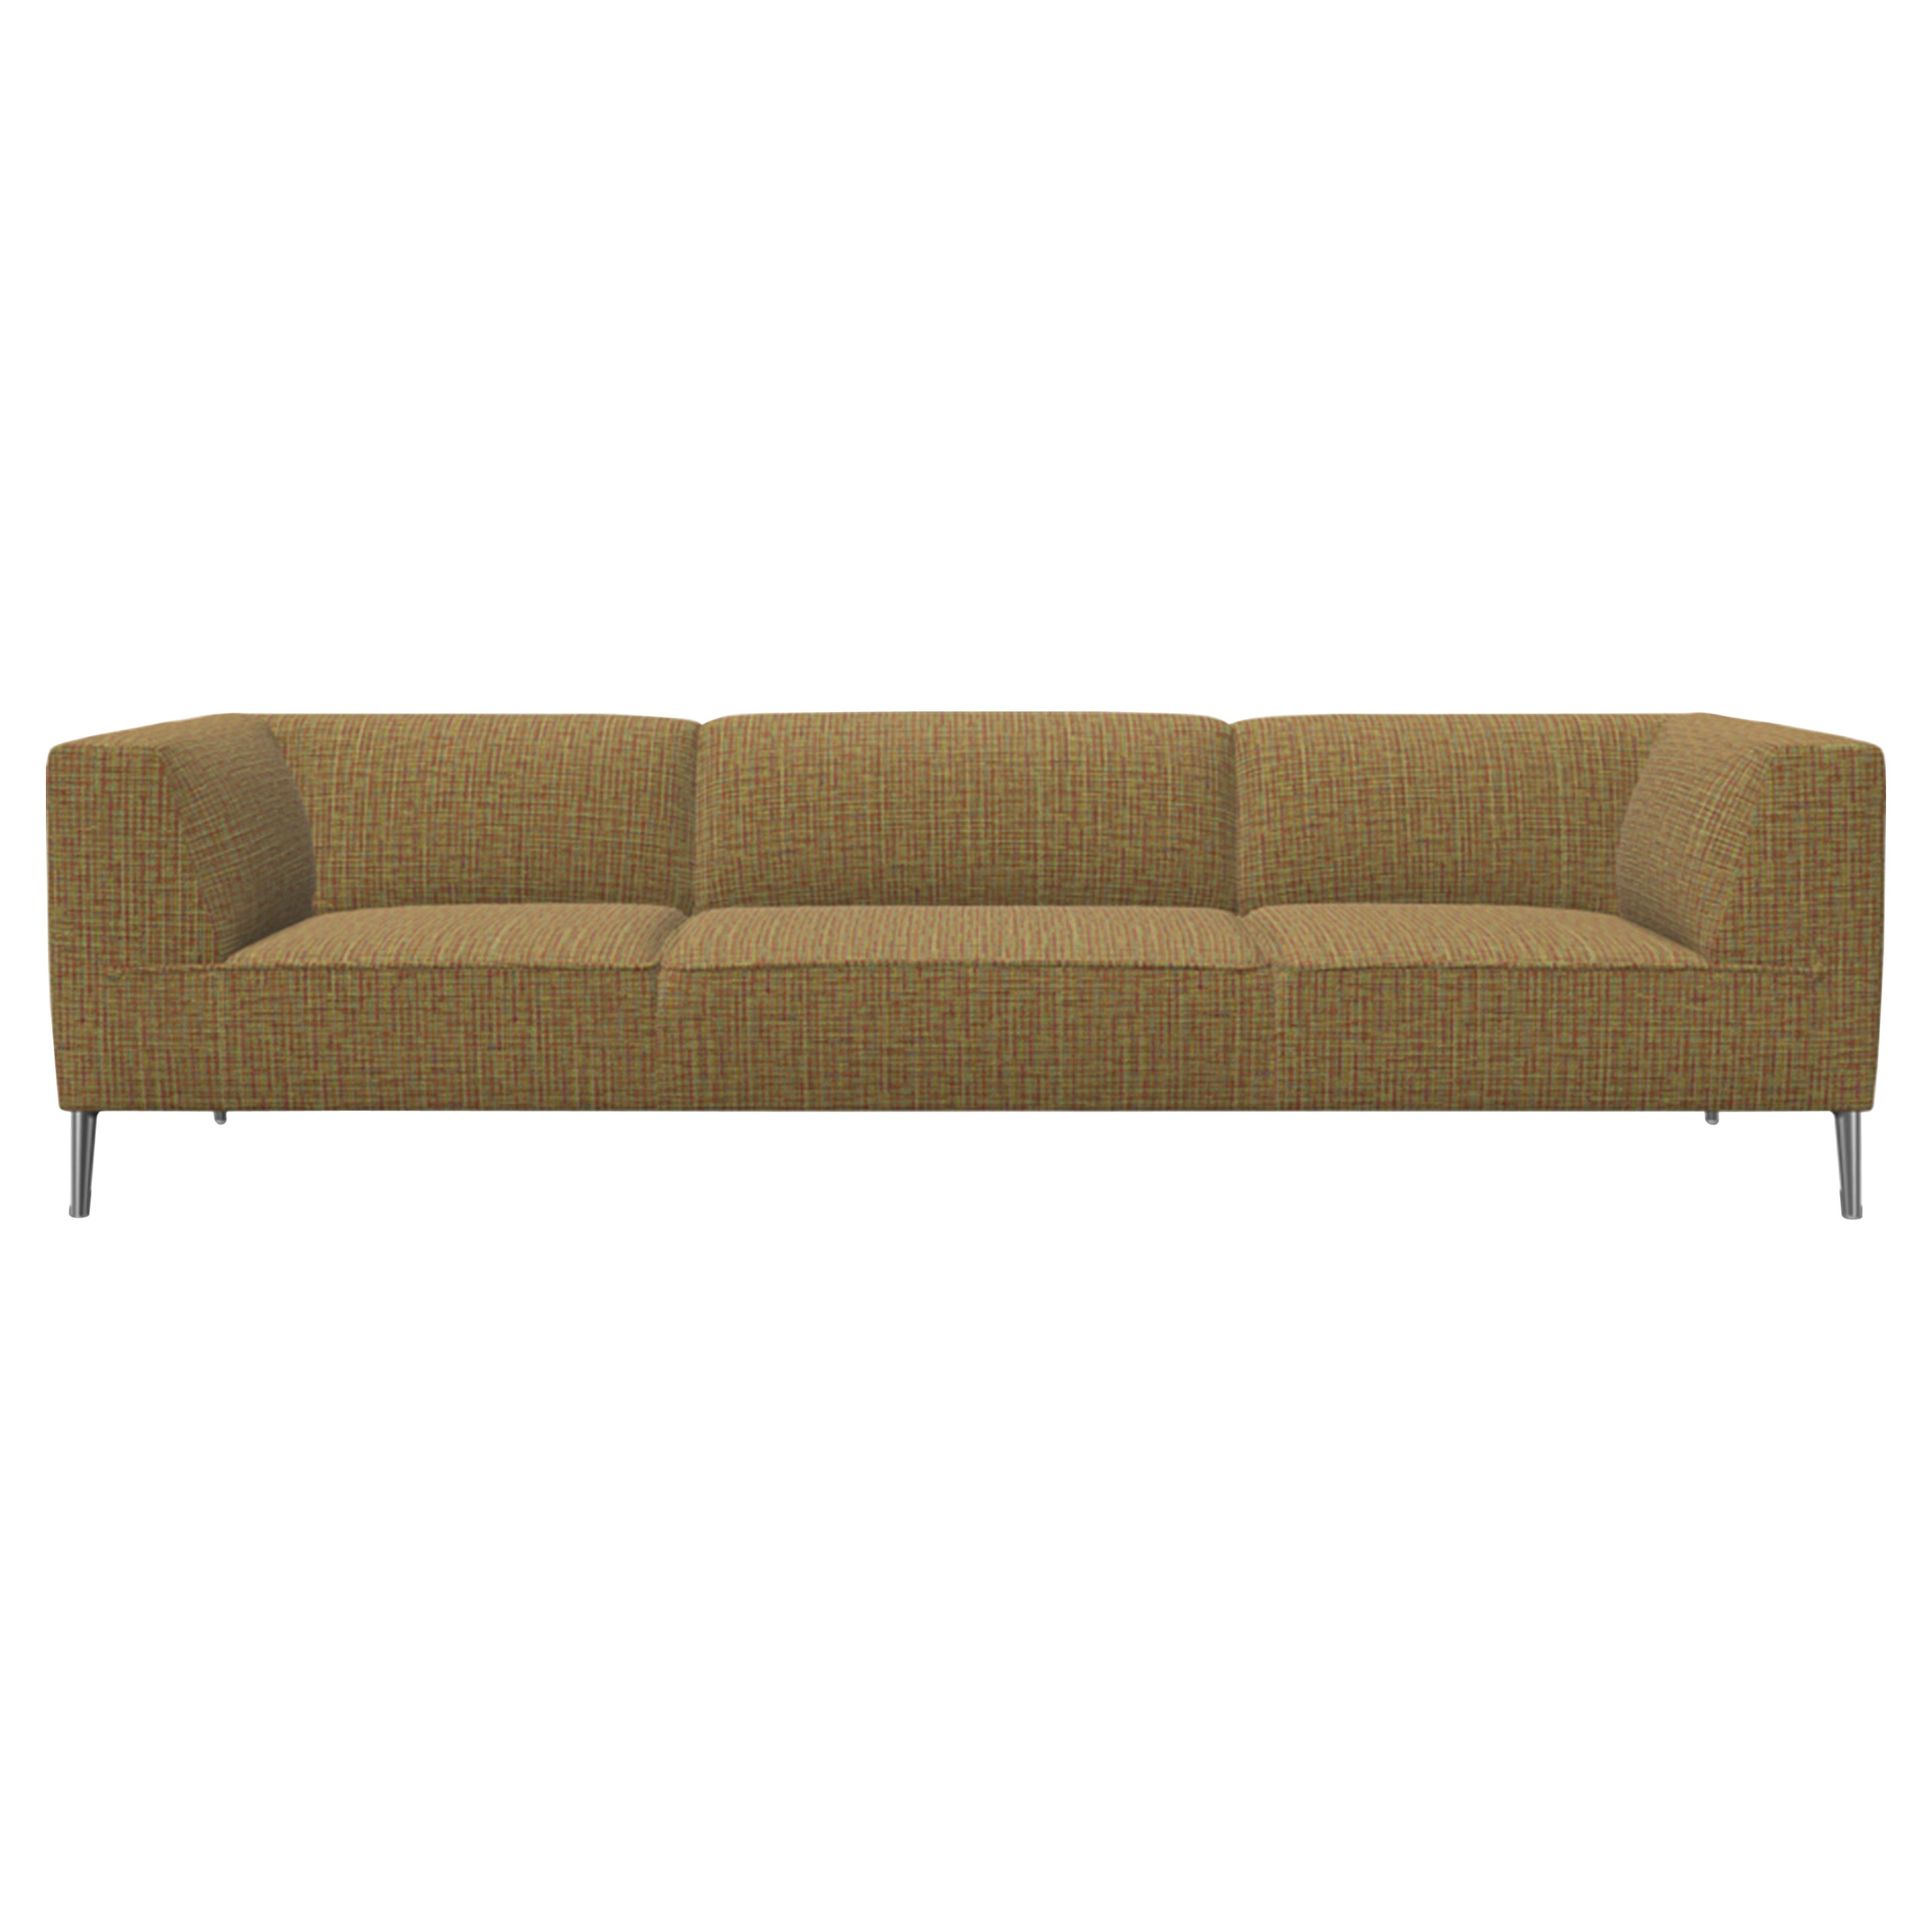 Moooi Dreisitziges Sofa So Good in Regenbogen-Polsterung mit polierten Aluminiumfüßen